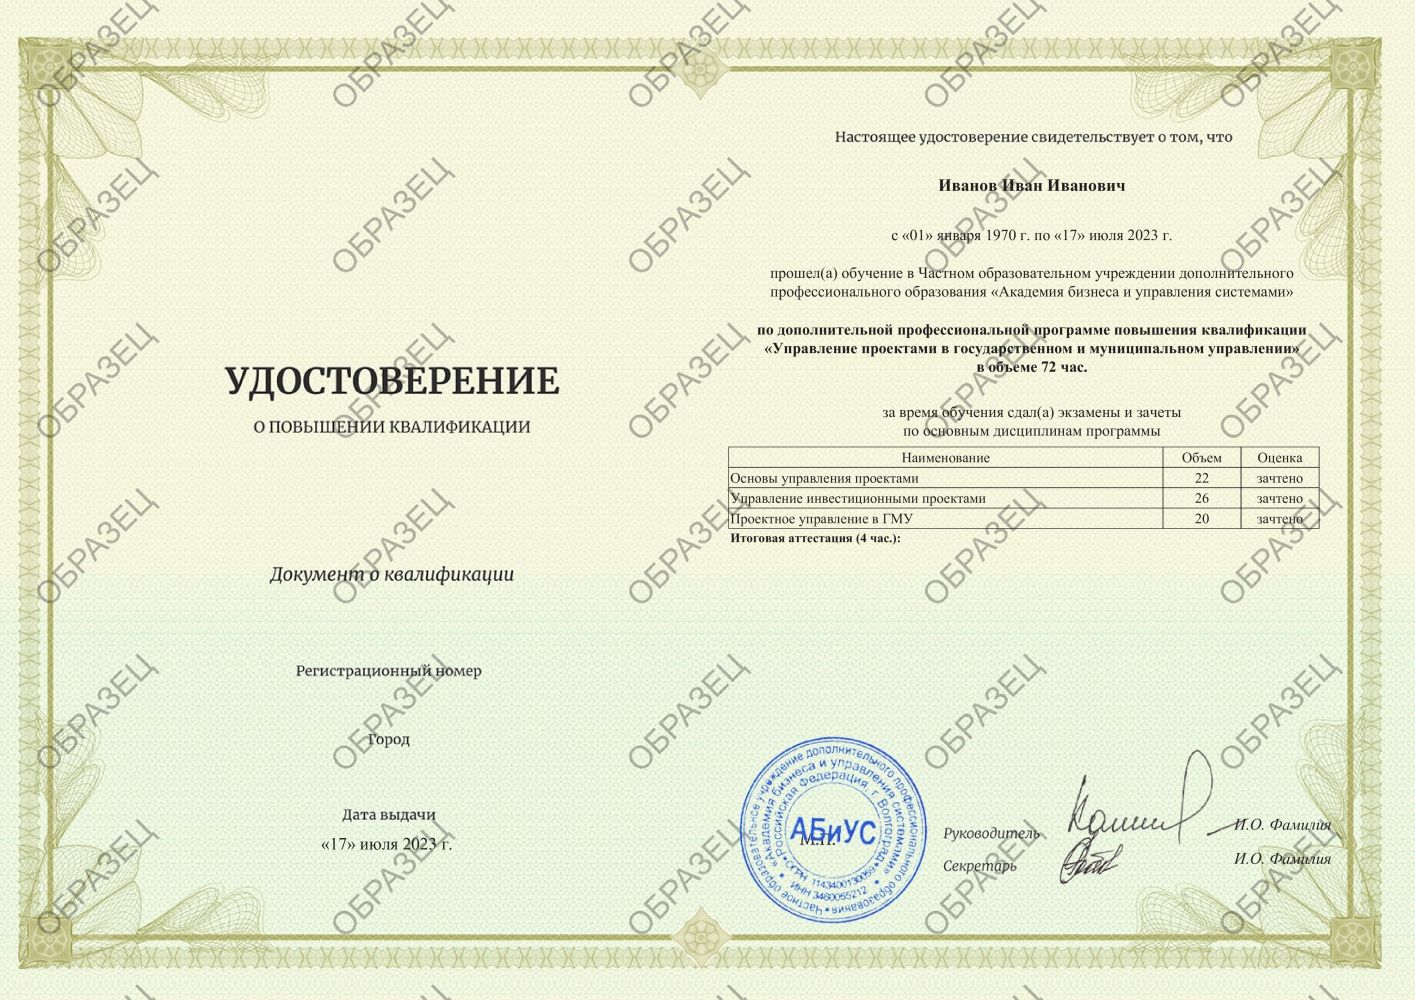 Удостоверение Управление проектами в  государственном и муниципальном управлении 72 часа 5688 руб.